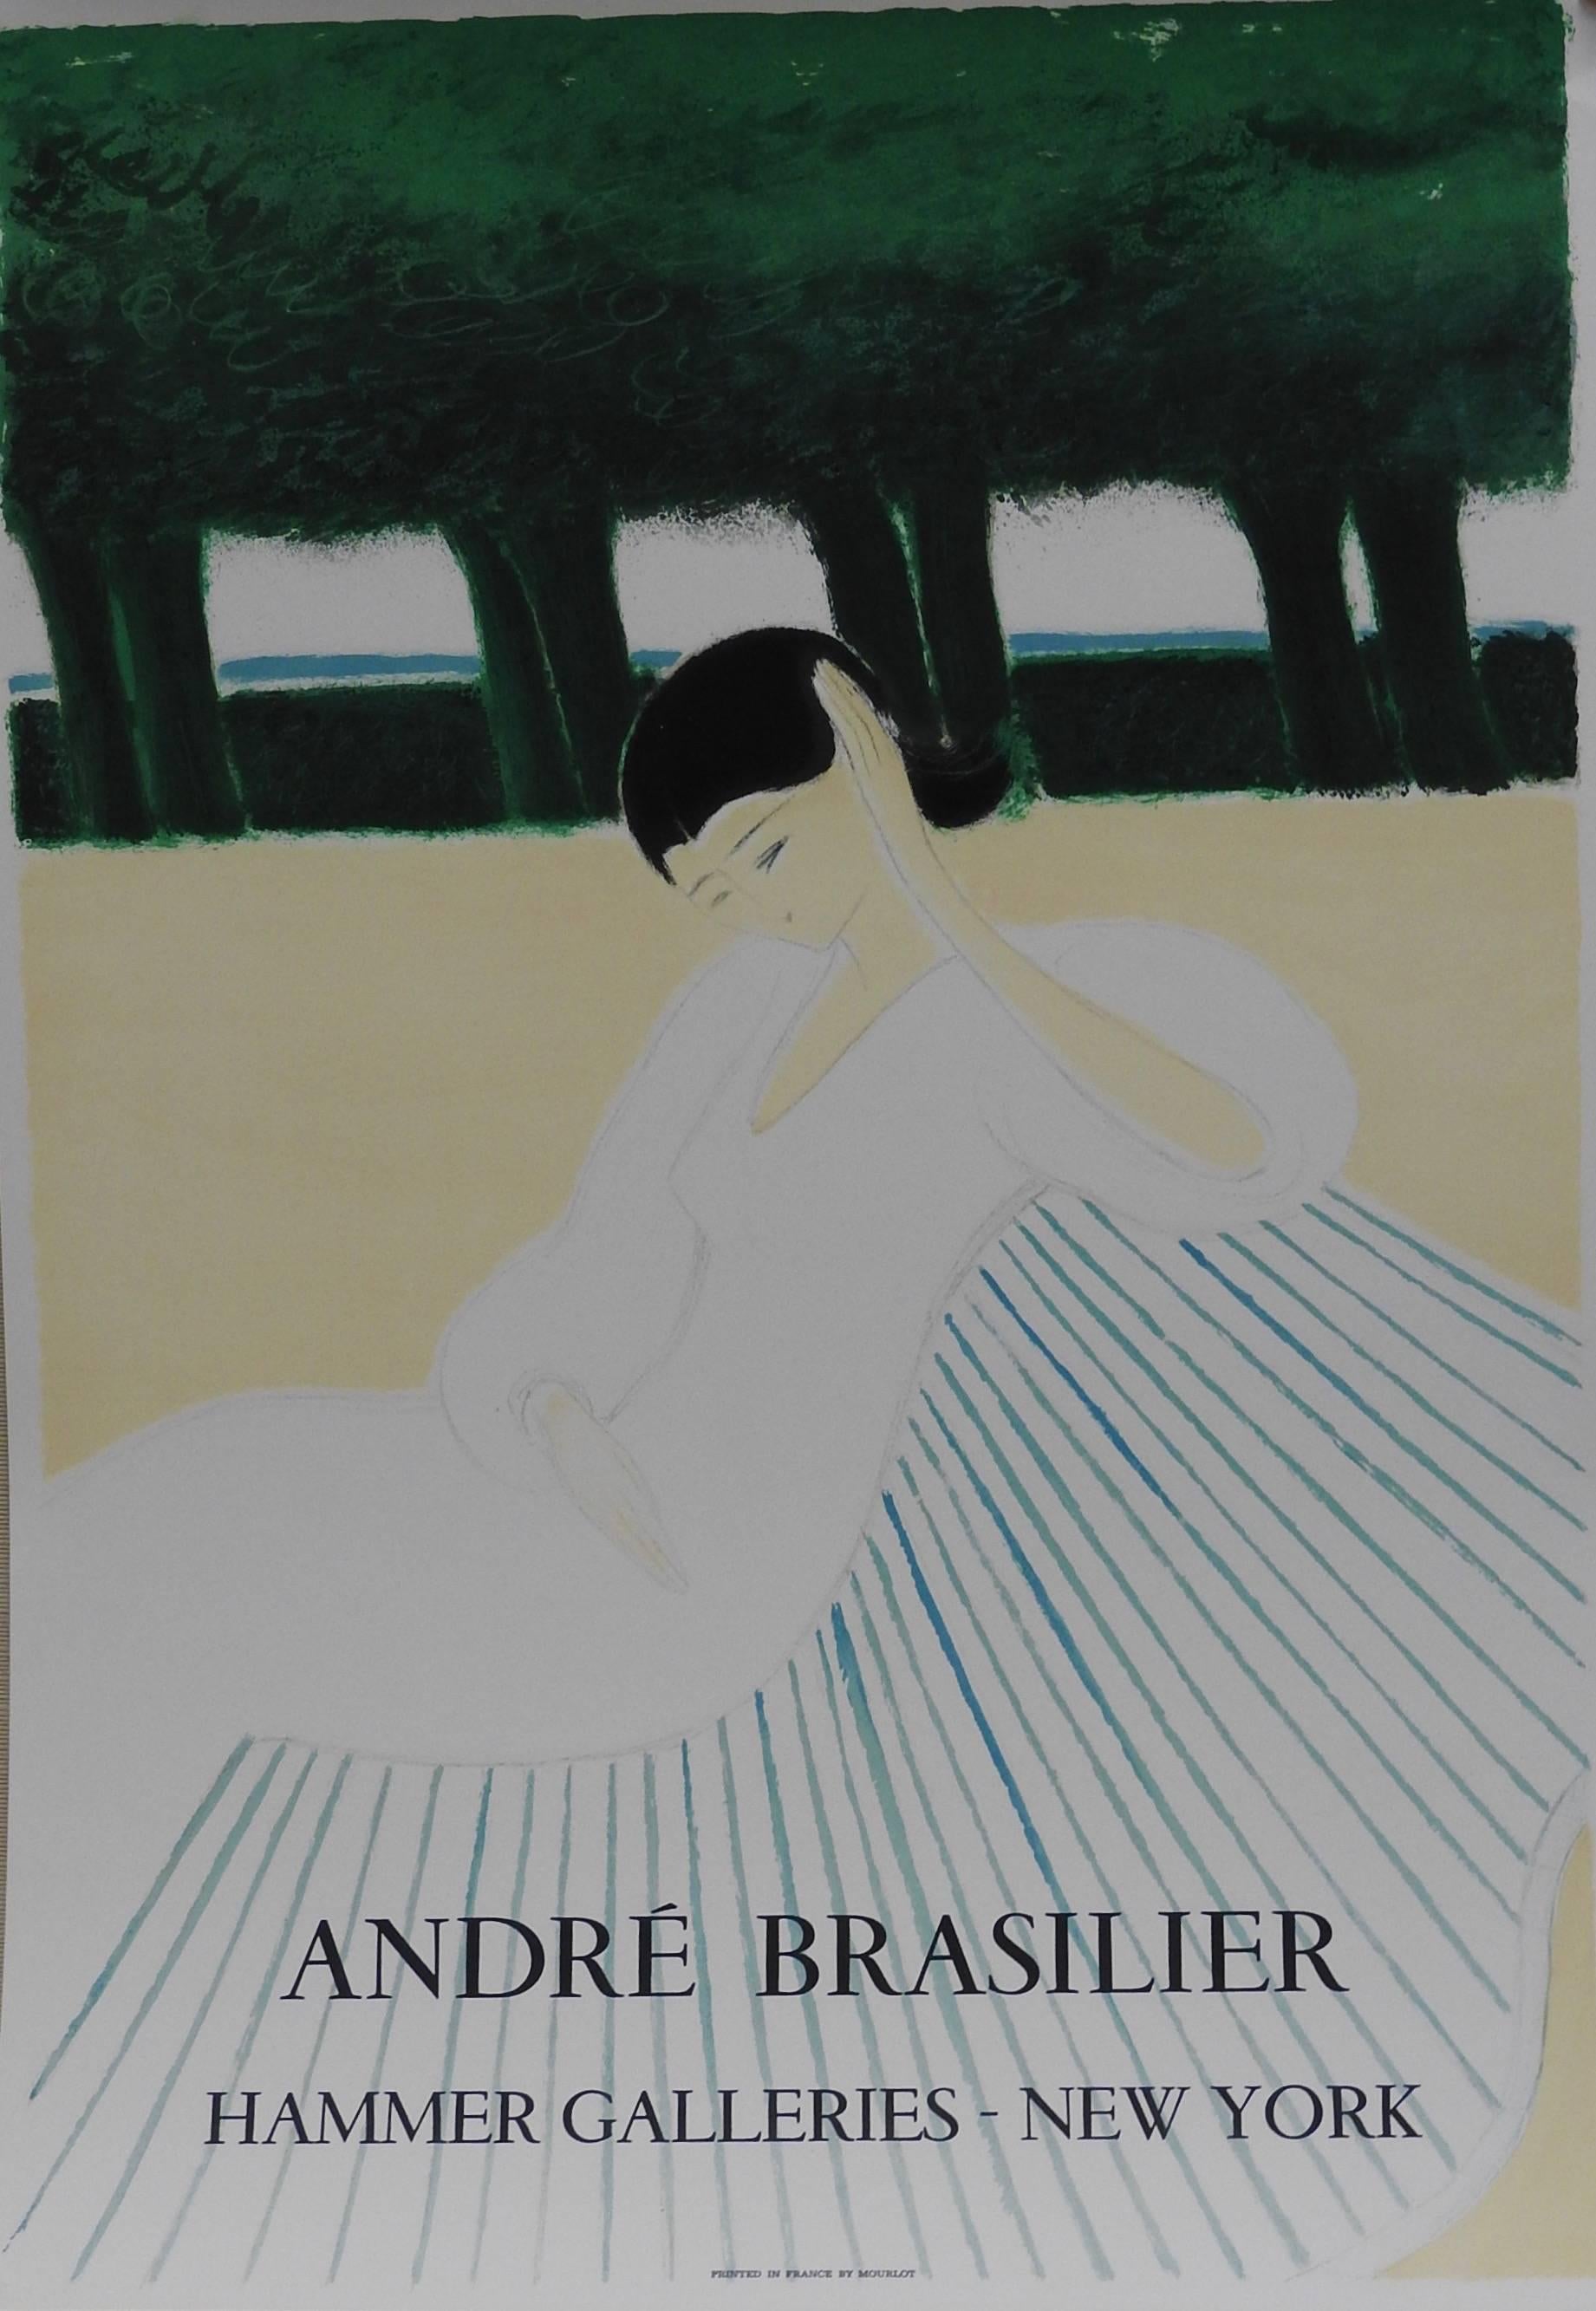 Affiche lithographique imprimée par Mourlot Paris annonçant l'exposition d'André Brasilier aux Hammer Galleries New York. Circa 1985
Cette pièce n'est pas encadrée.